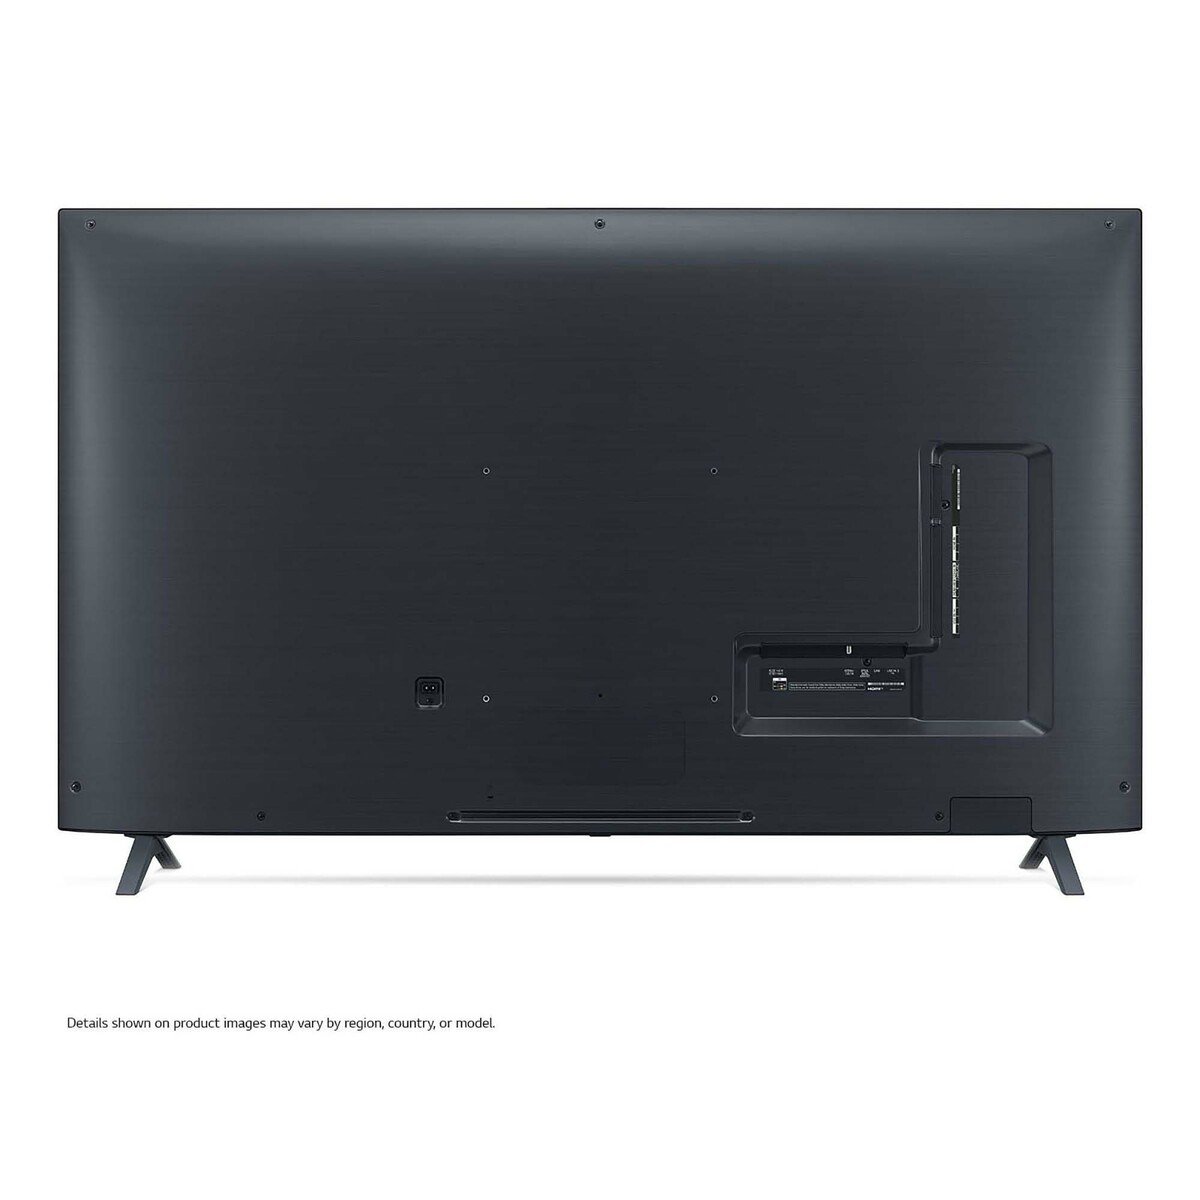 LG NanoCell TV 55 Inch NANO90 Series 55NANO90VNA 55" (Series 2020)